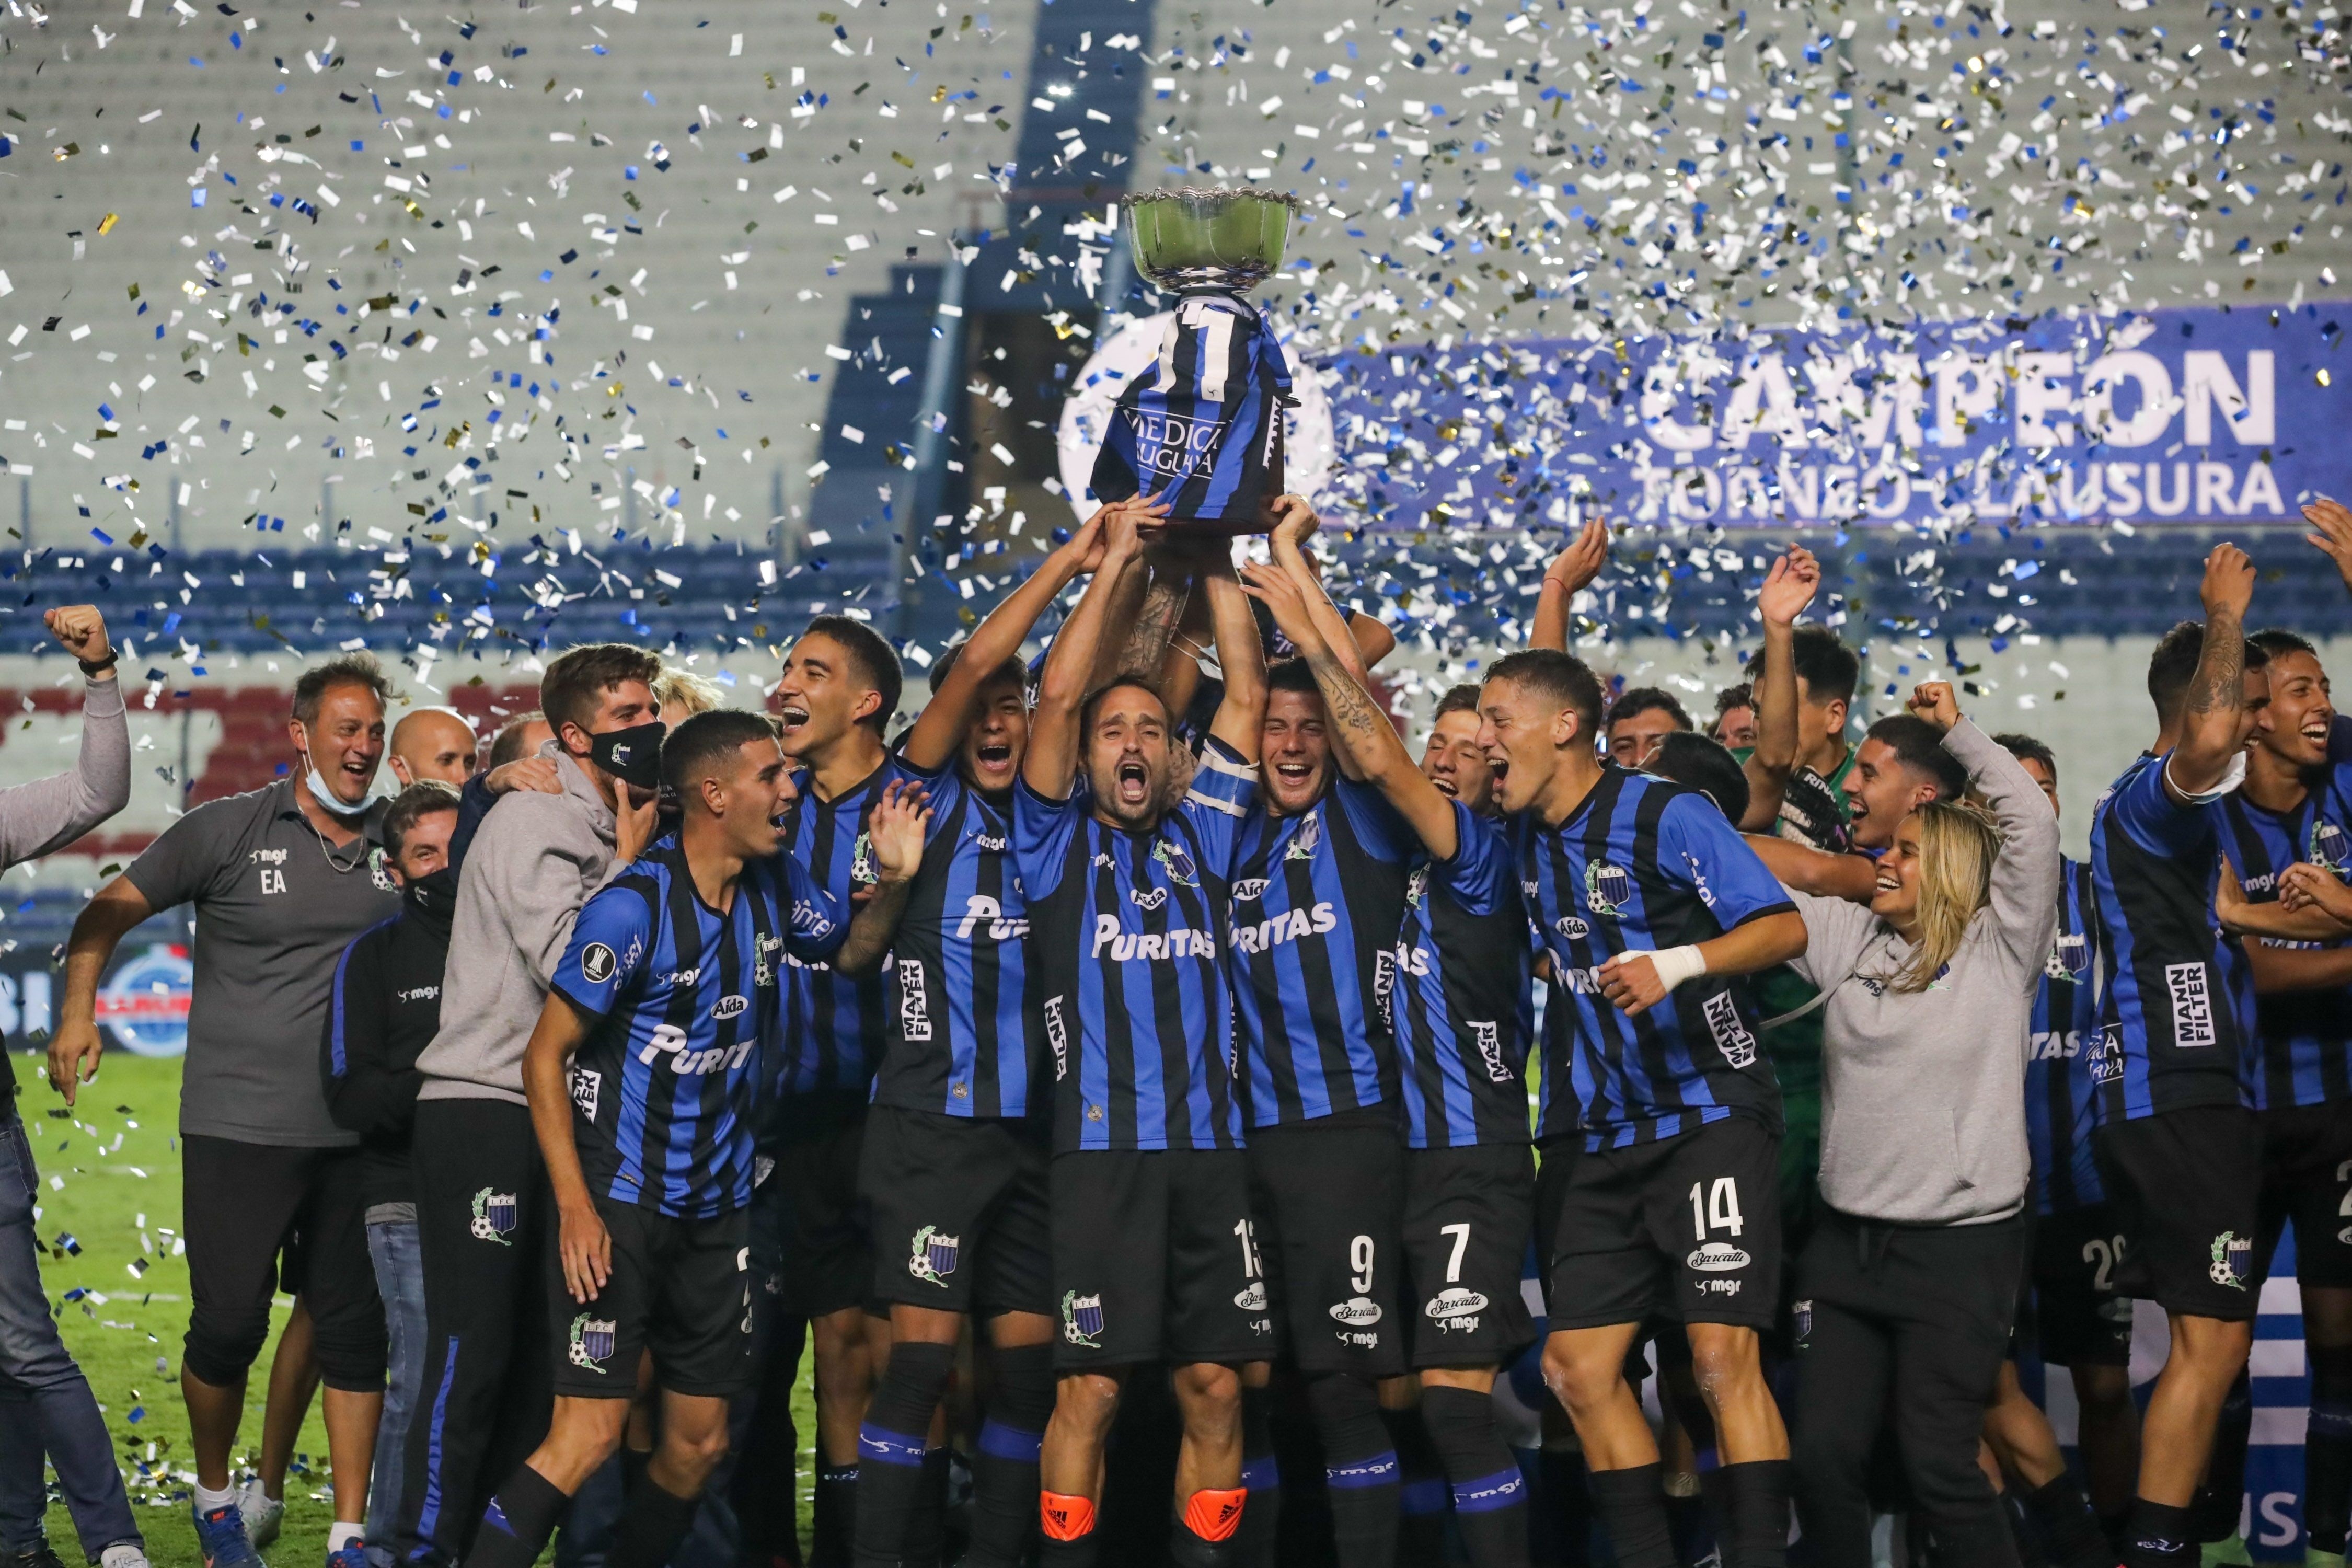 Gana Liverpool torneo Clausura del fútbol de Uruguay - Prensa Latina